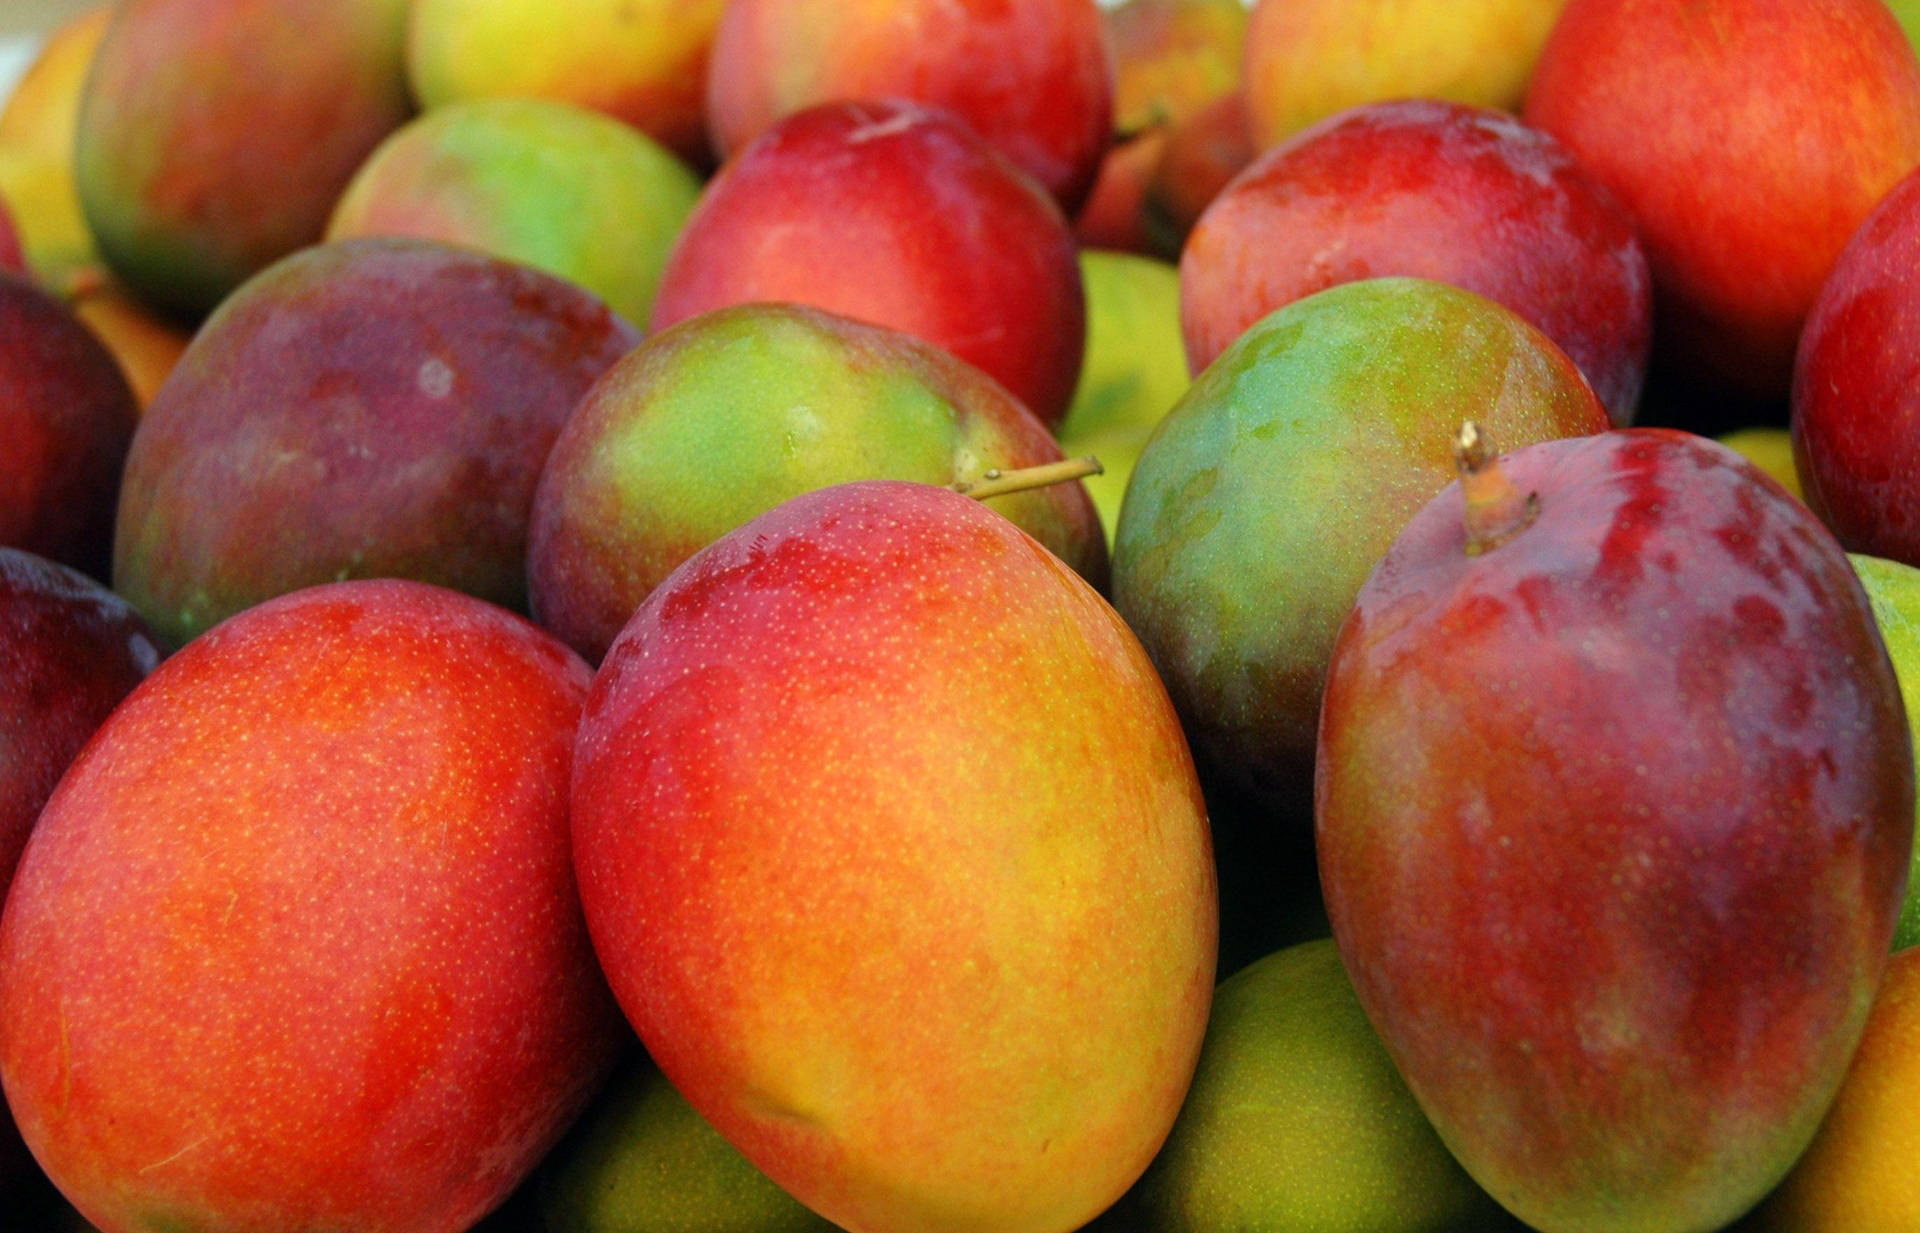 Red Apple-like Mango Fruits Background